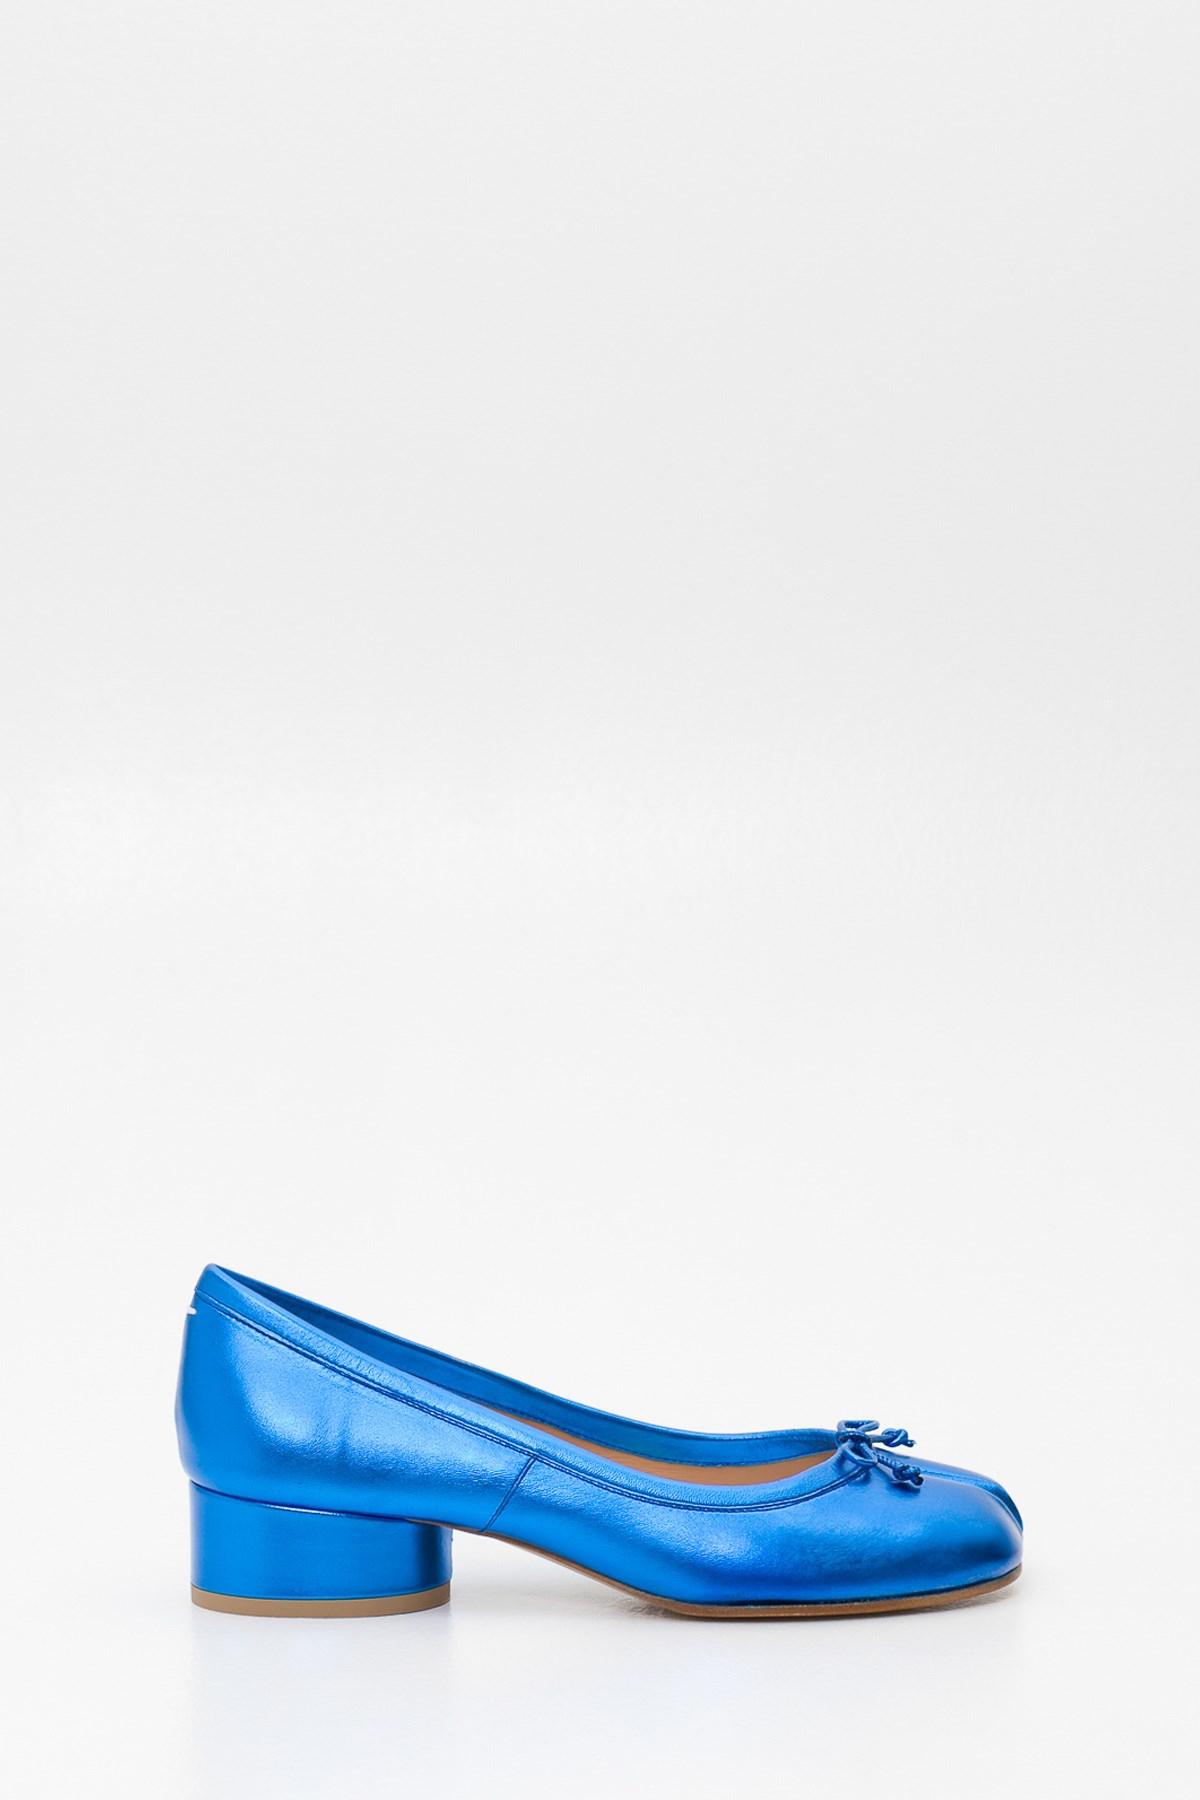 blue ballerina pumps